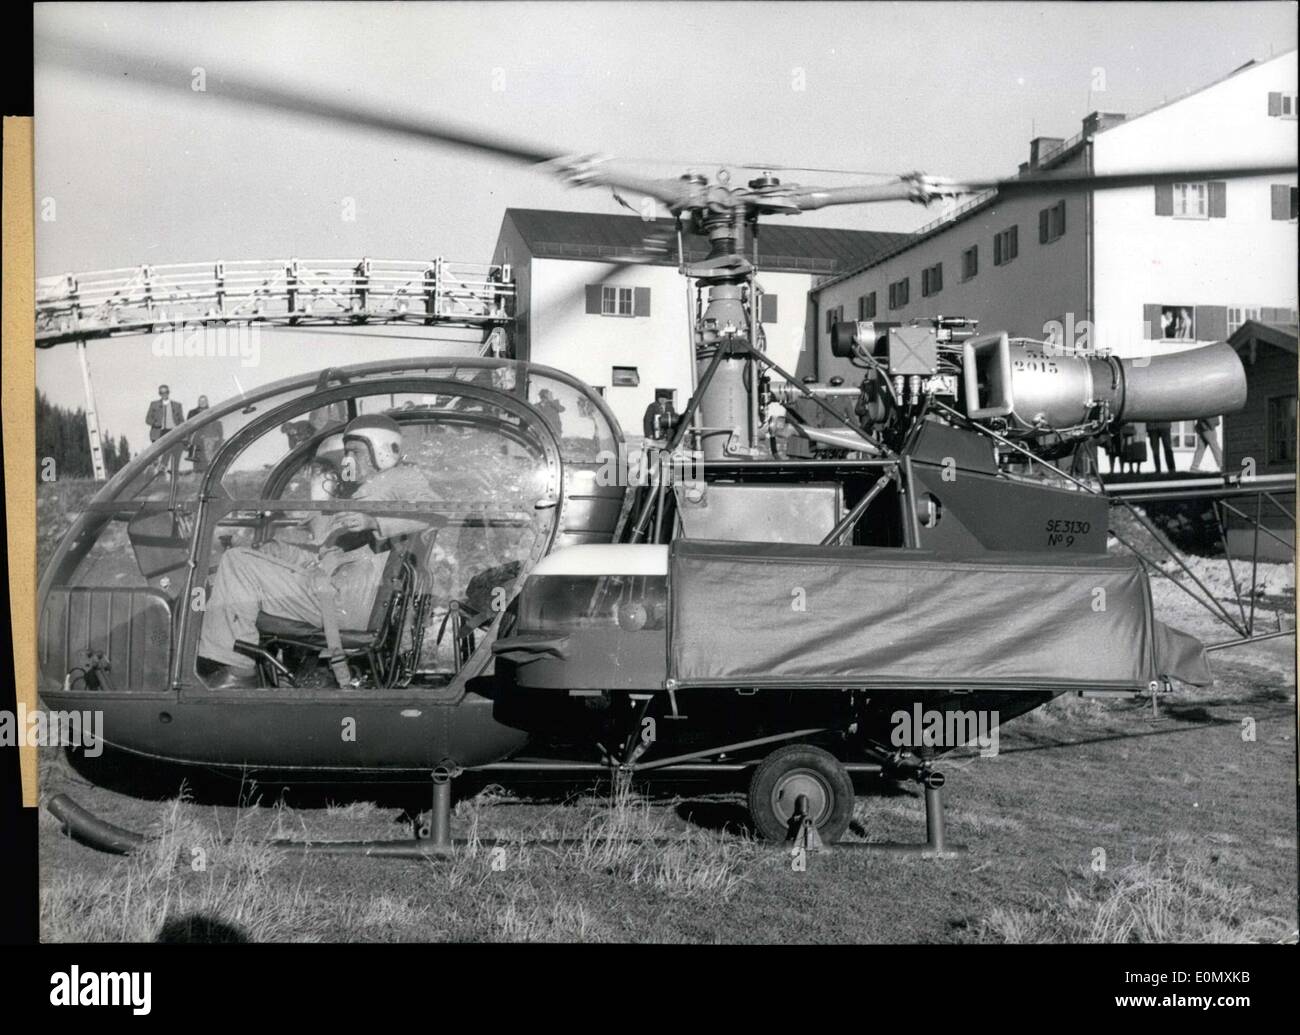 29 octobre 1956 - Français Gas-Turbine hélicoptère en mission de sauvetage. Dans la région près de Tegernsee Wallberg un hélicoptère à turbine à gaz français nommé ''Alouette II'' réalisée avec le service de sauvetage en montagne allemande. ''Alouette II'', contrairement à des hélicoptères à moteur, n'est pas de vibrations. Elle consomme également moins de carburant qu'il's motor-driven cousins. 2 personnes blessées peuvent être fixés sur le côté. 3 personnes peuvent monter dans l'hélicoptère lui-même, et le pilote et d'un médecin peut s'asseoir dans le cockpit. Sur la photo : l'hélicoptère est arrivé. Le brancard fixé sur le côté des blessés est visible. Banque D'Images